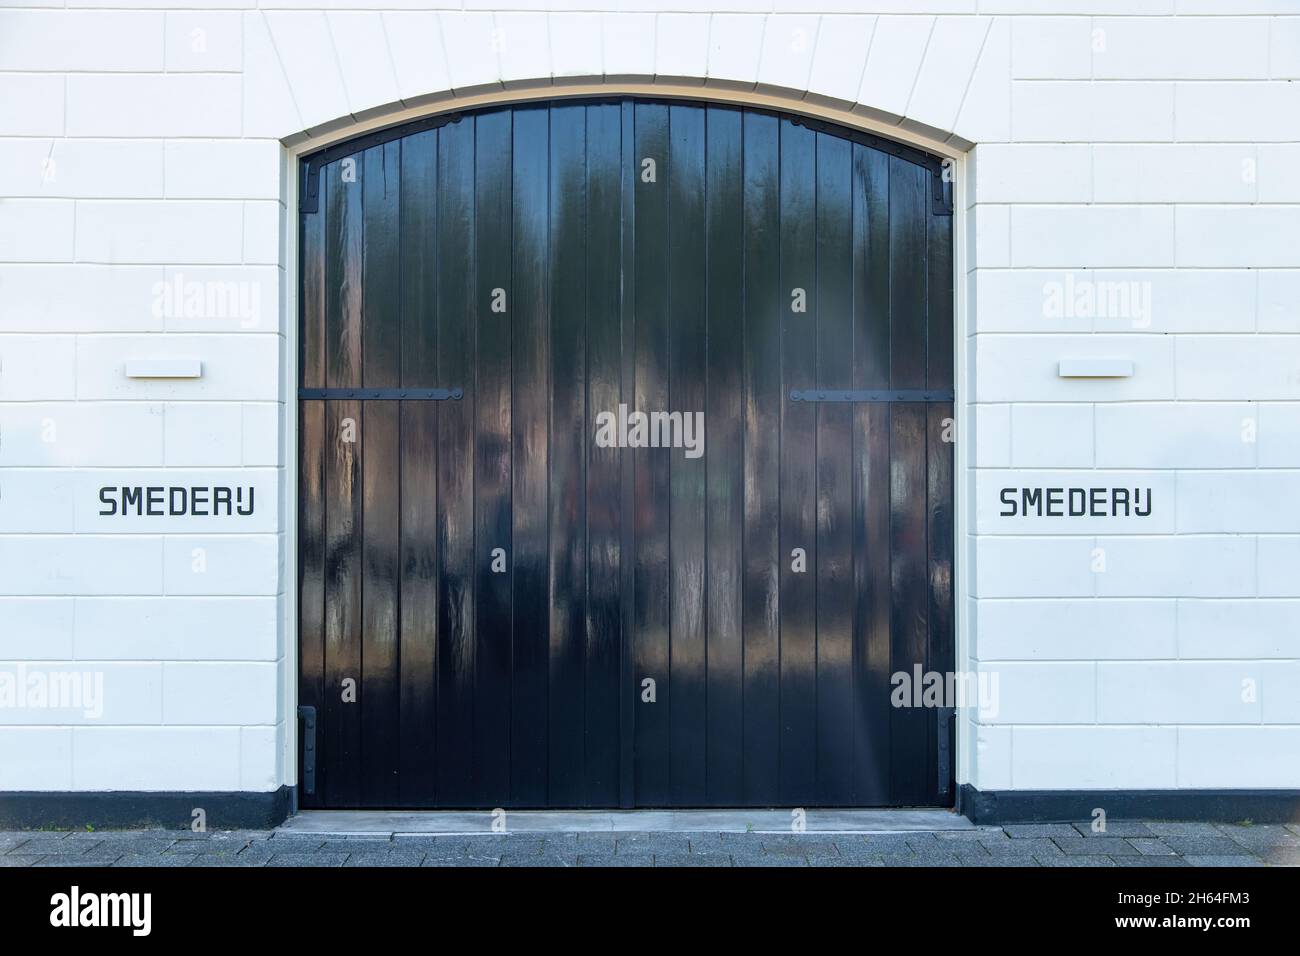 Primo piano della facciata splendidamente rinnovata di un ex smithy (Smederij traduce da olandese) con grandi pareti di pietra bianca e grandi porte e parole Foto Stock